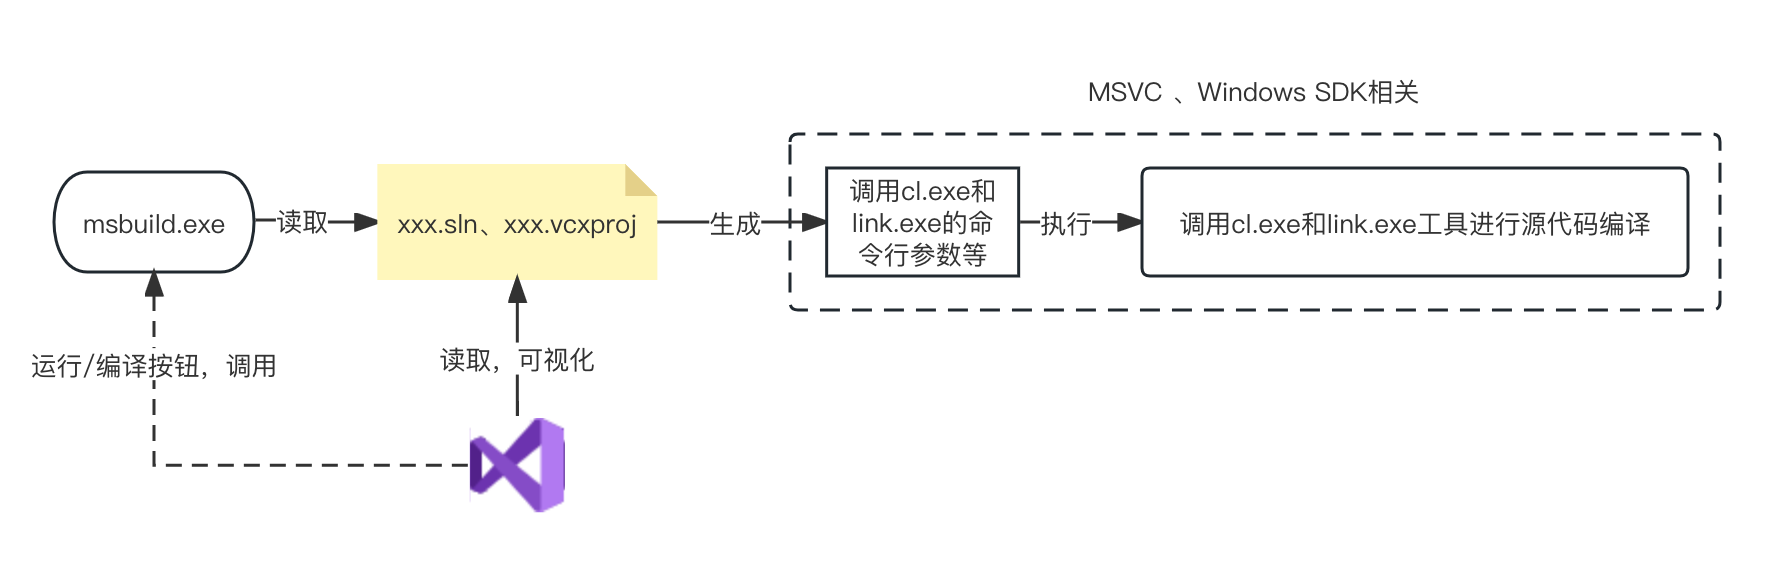 050-VS-IDE-MSBuild-MSVC-flow